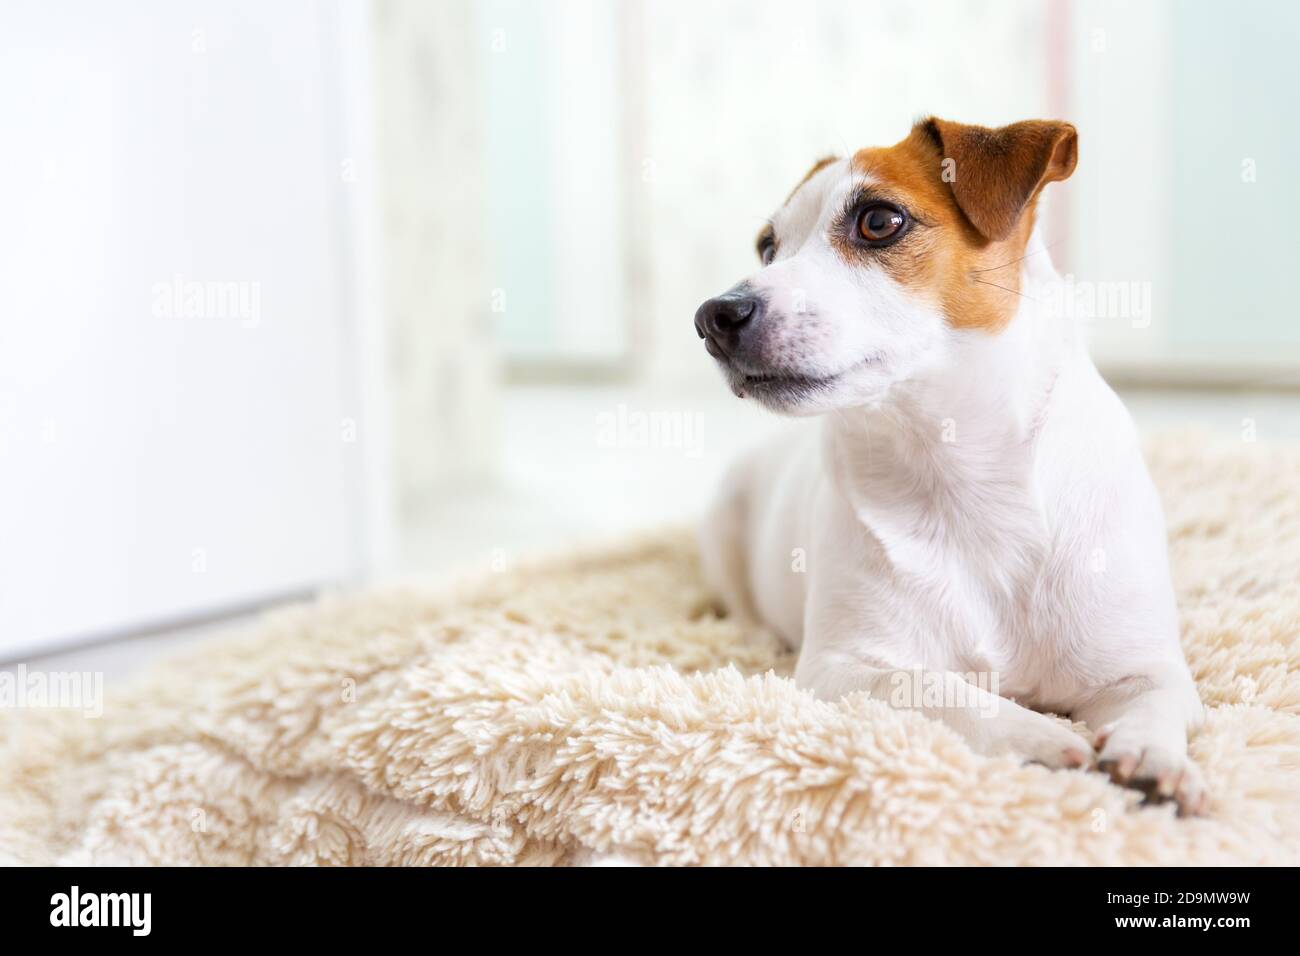 Ein schöner Hund Jack Russell Terrier liegt auf dem Boden auf einer flauschigen Decke, streckt seine Beine nach vorne und schaut weg. Braune Augen, schwarze Nase. Tag des Hundes. Stockfoto